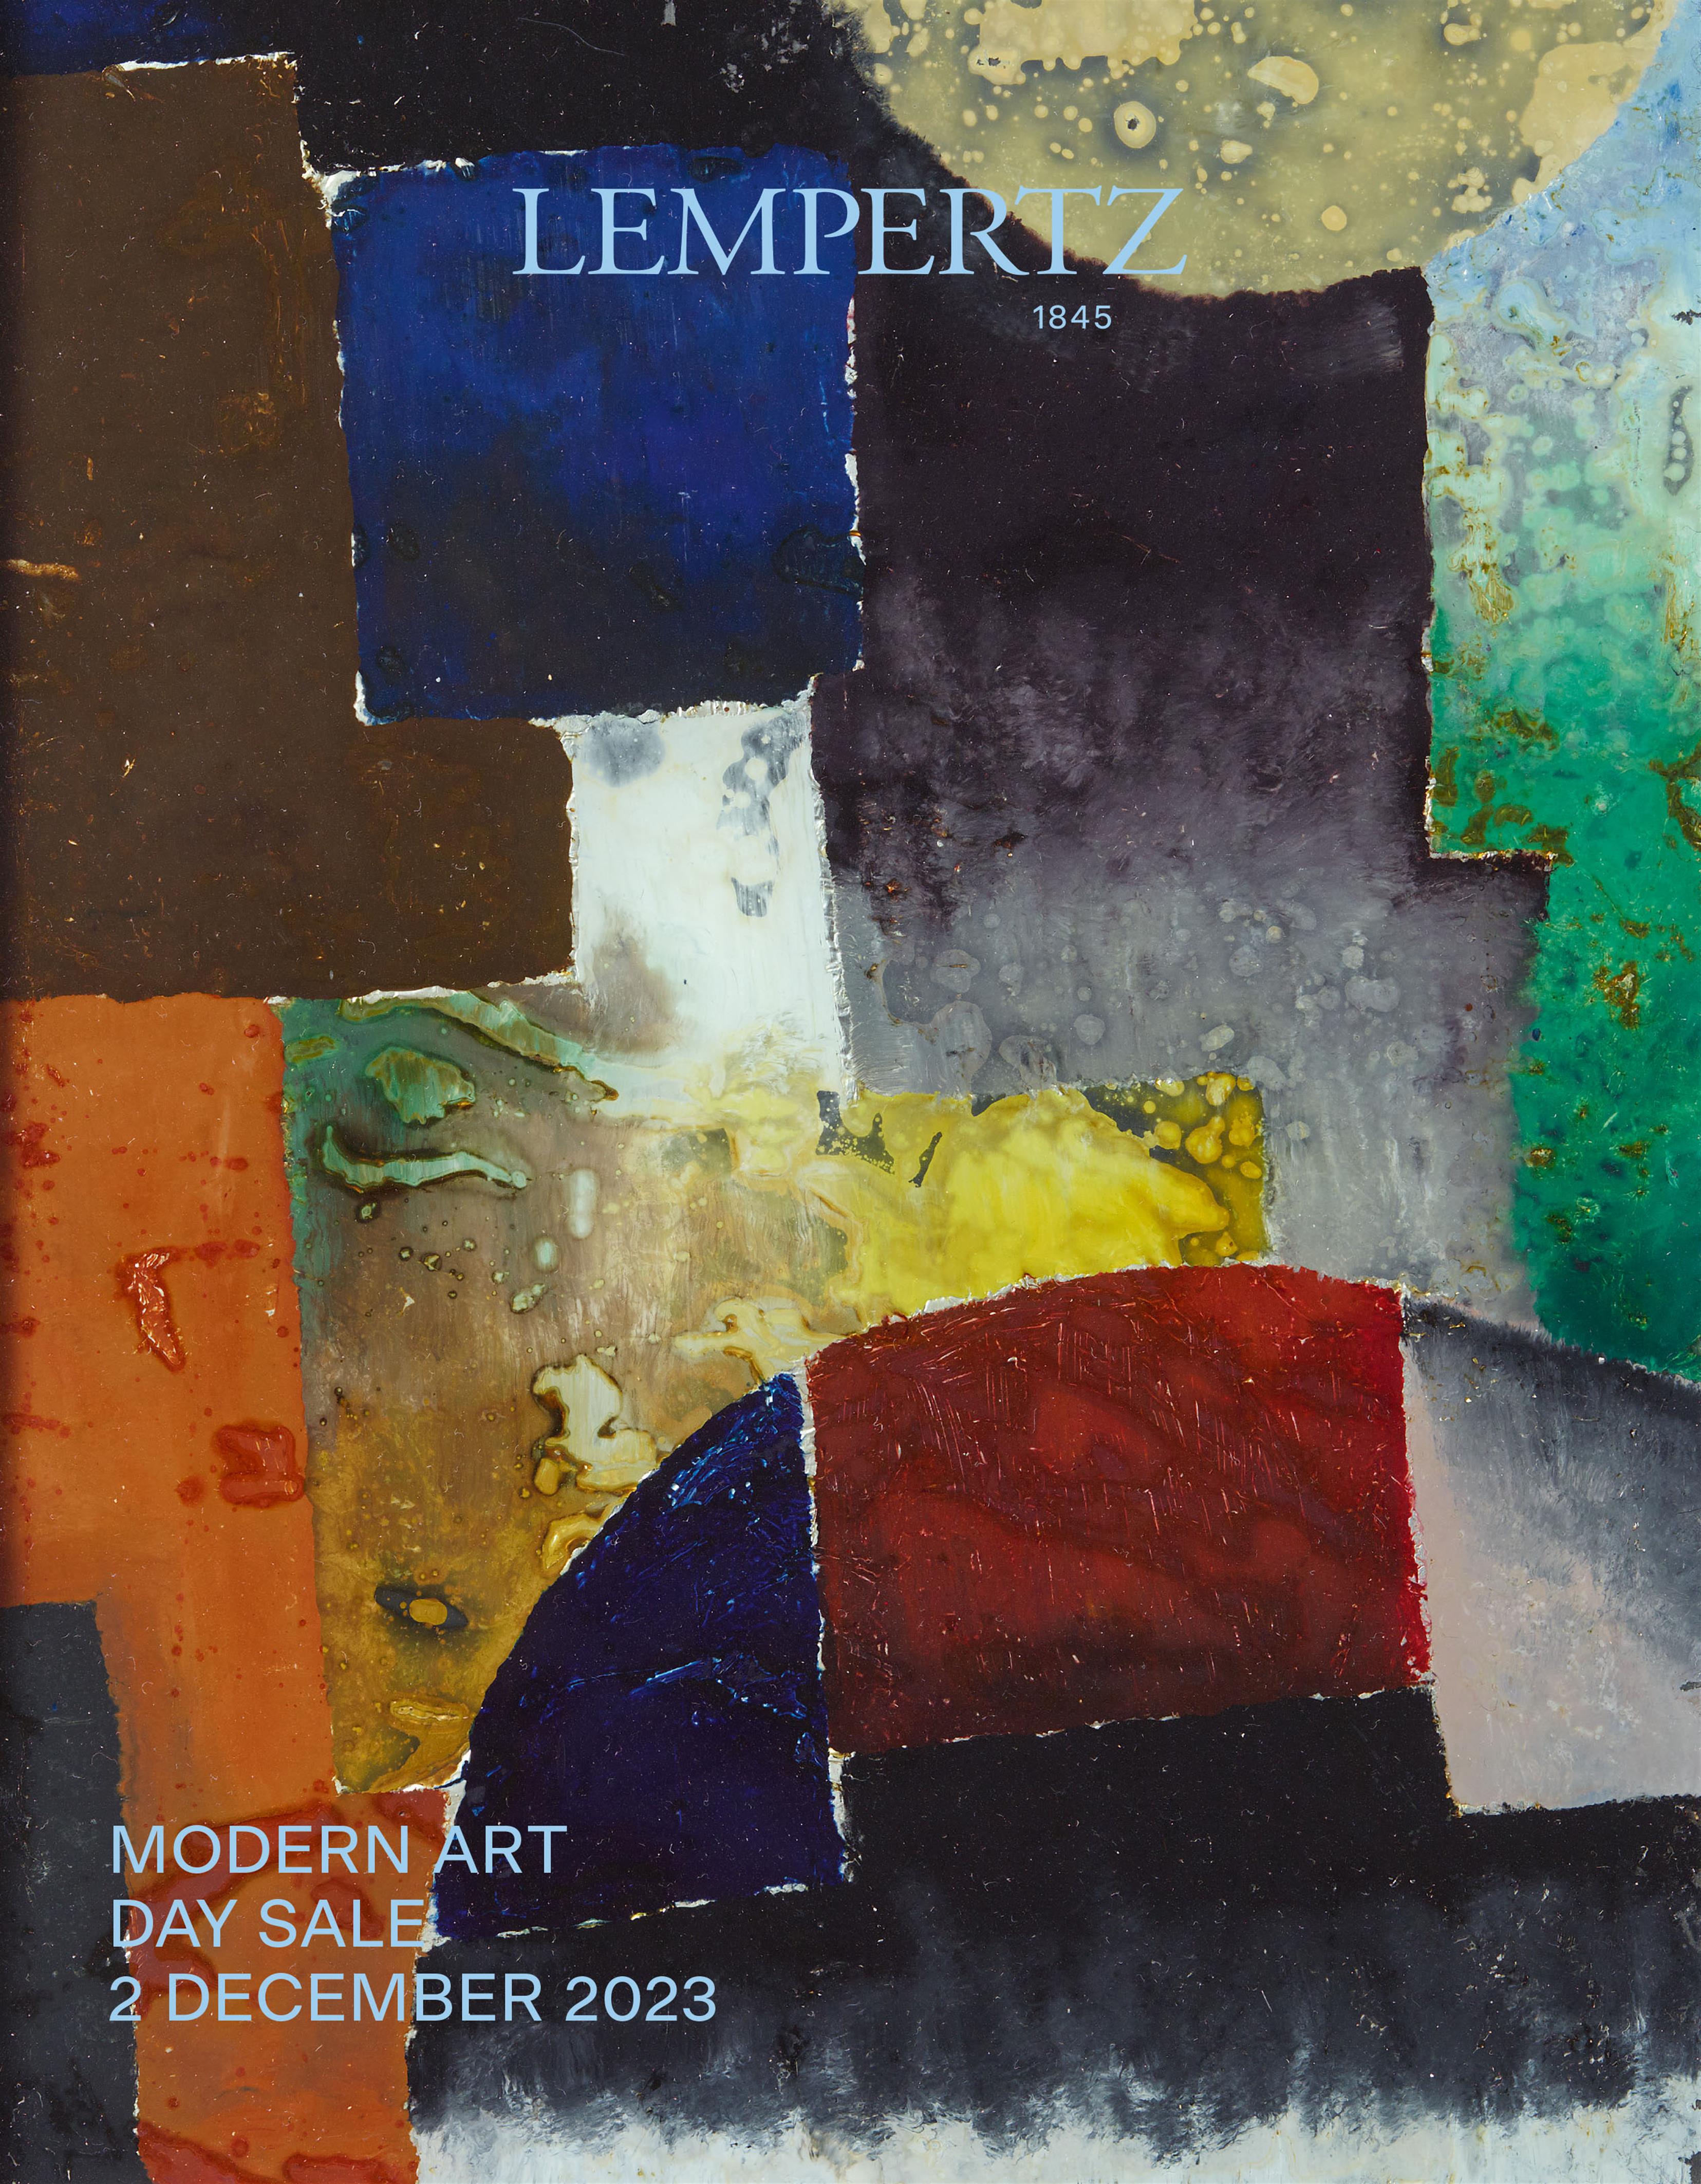 Auktionskatalog - Day Sale - Moderne Kunst - Online Katalog - Auktion 1234 – Ersteigern Sie hochwertige Kunst in der nächsten Lempertz-Auktion!